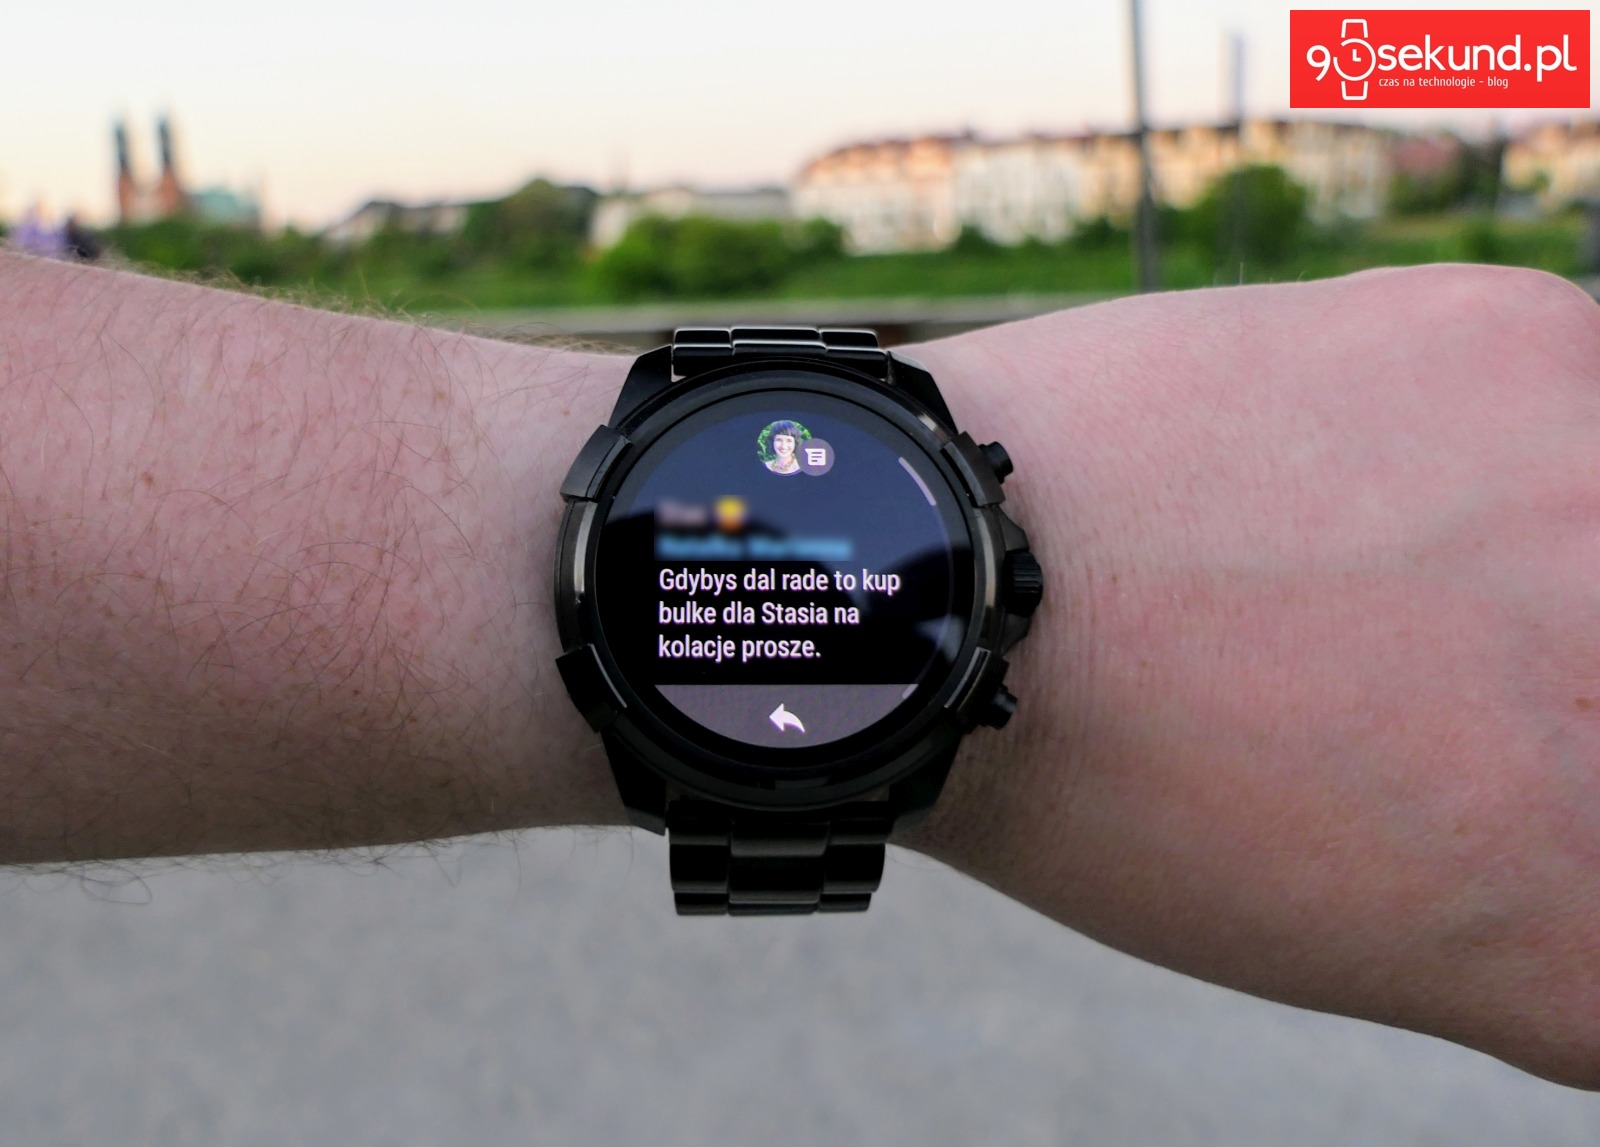 Odczyt wiadomości na smartwatchu Diesel On Full Guard 2.0 w Google Fit - Michał Brożyński 90sekund.pl